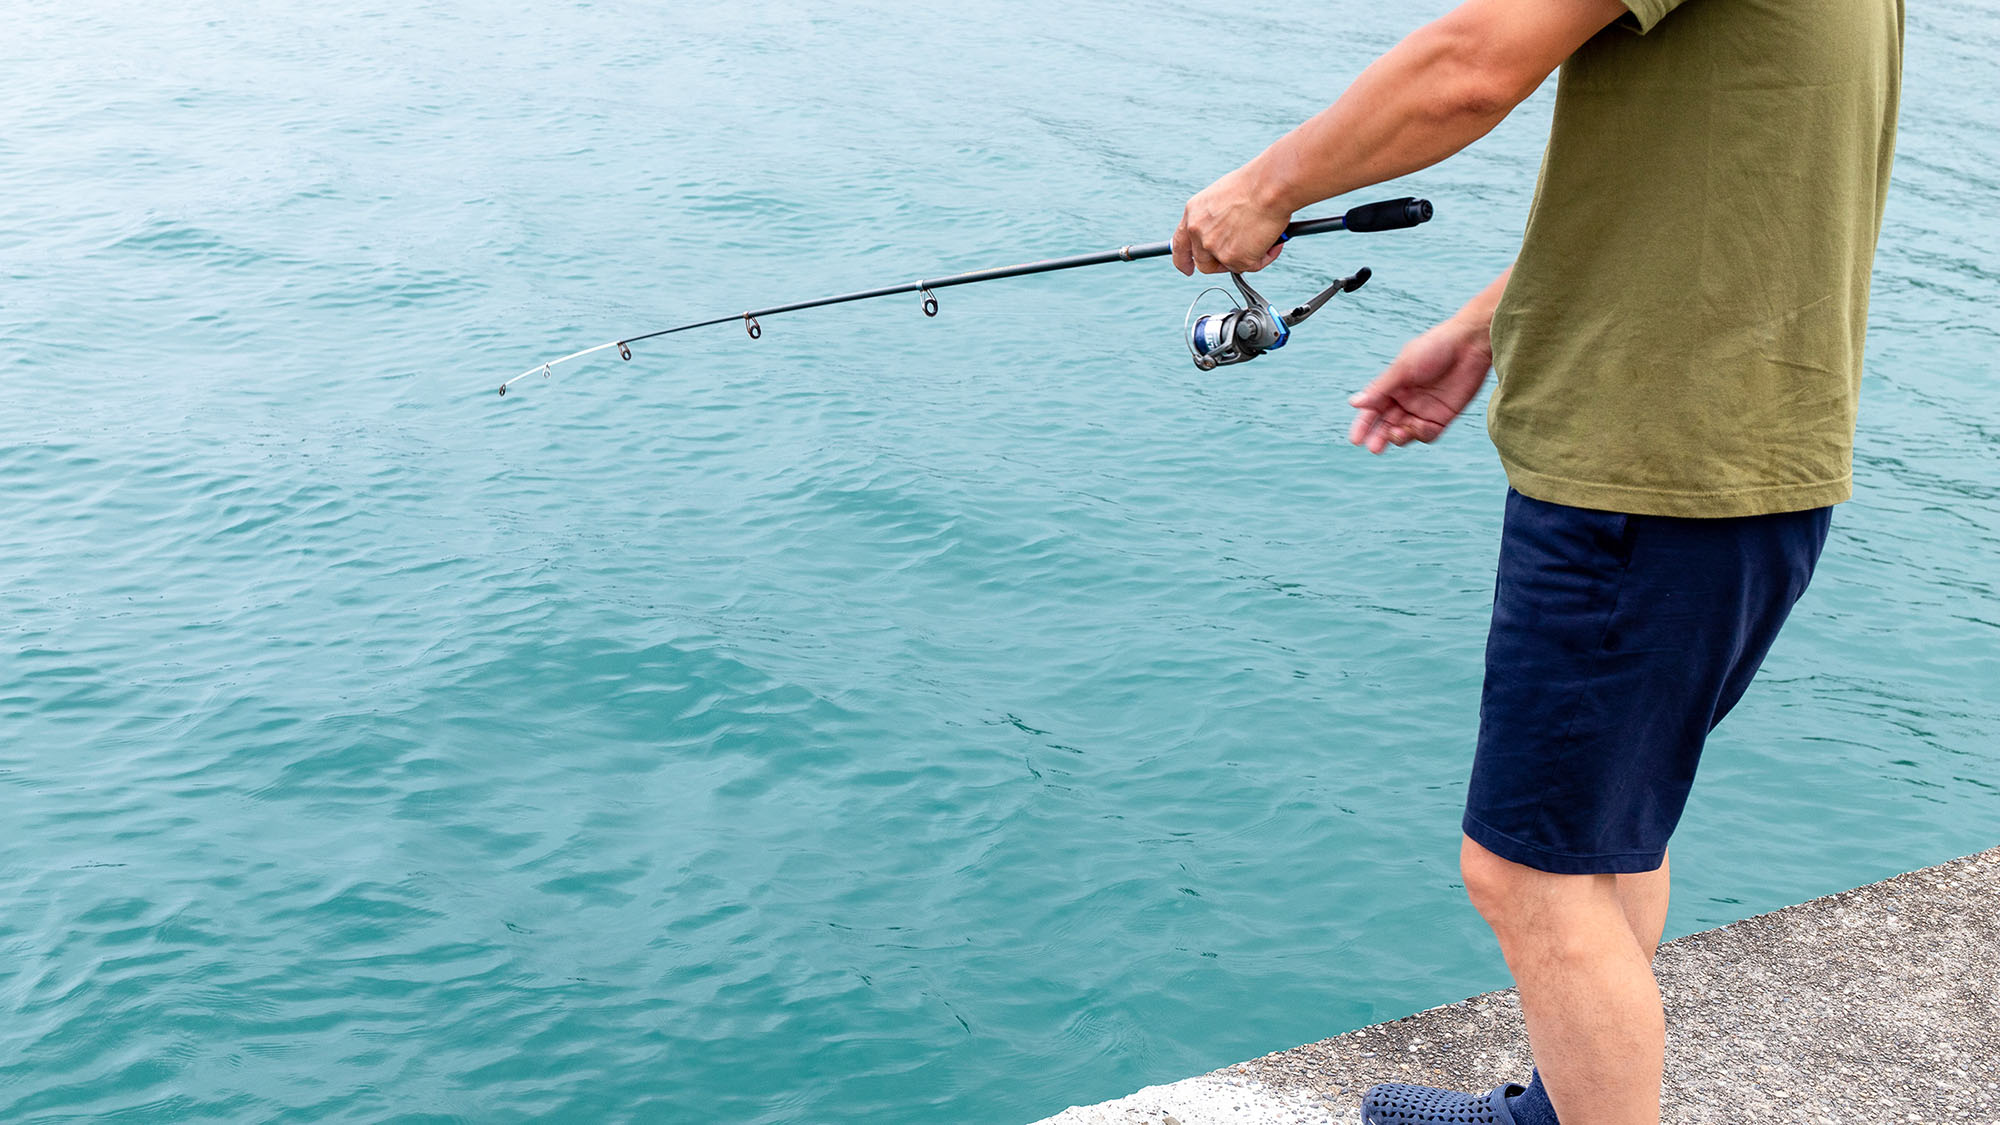 ・【アクティビティ・釣り】あなたの釣りの腕前はいかに！ご家族やカップルで釣り対決も是非♪